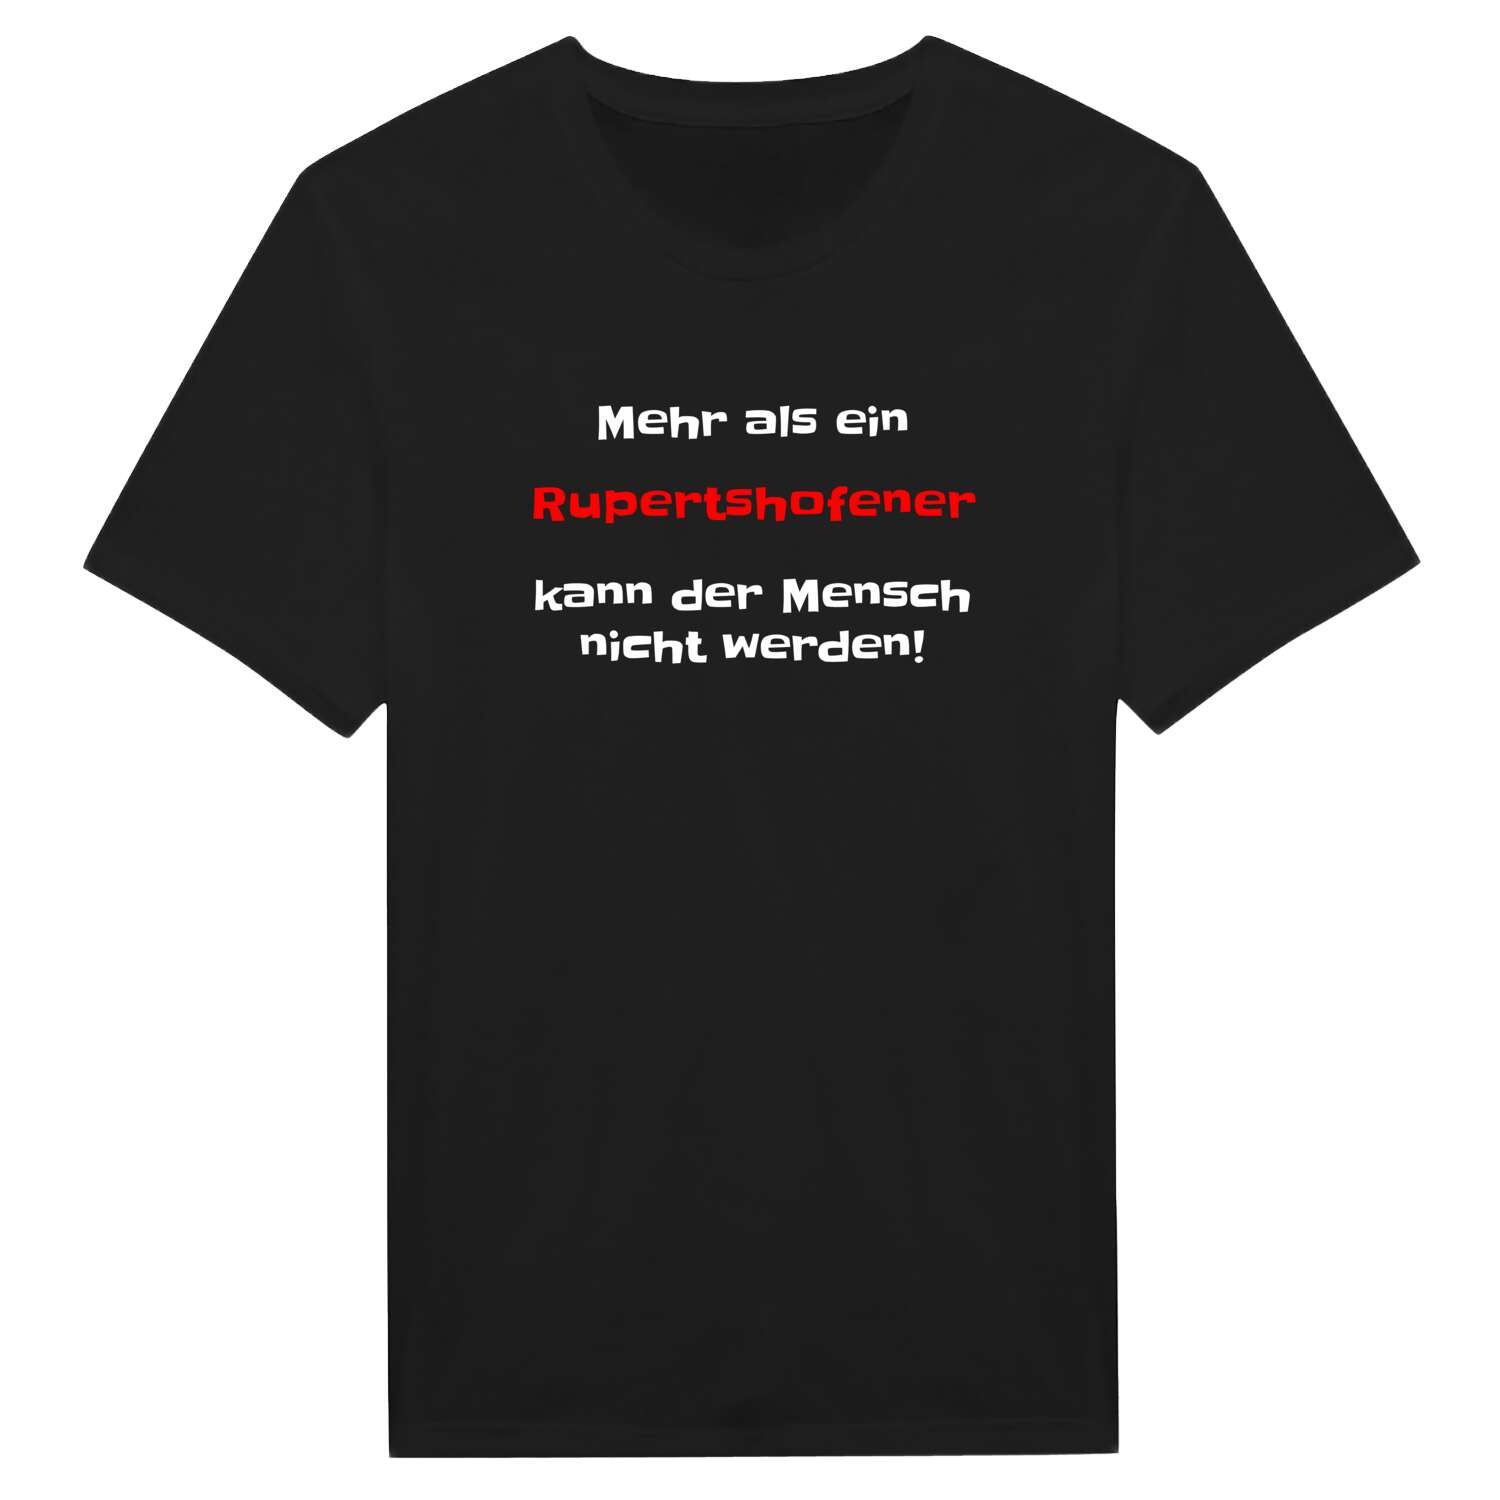 Rupertshofen T-Shirt »Mehr als ein«